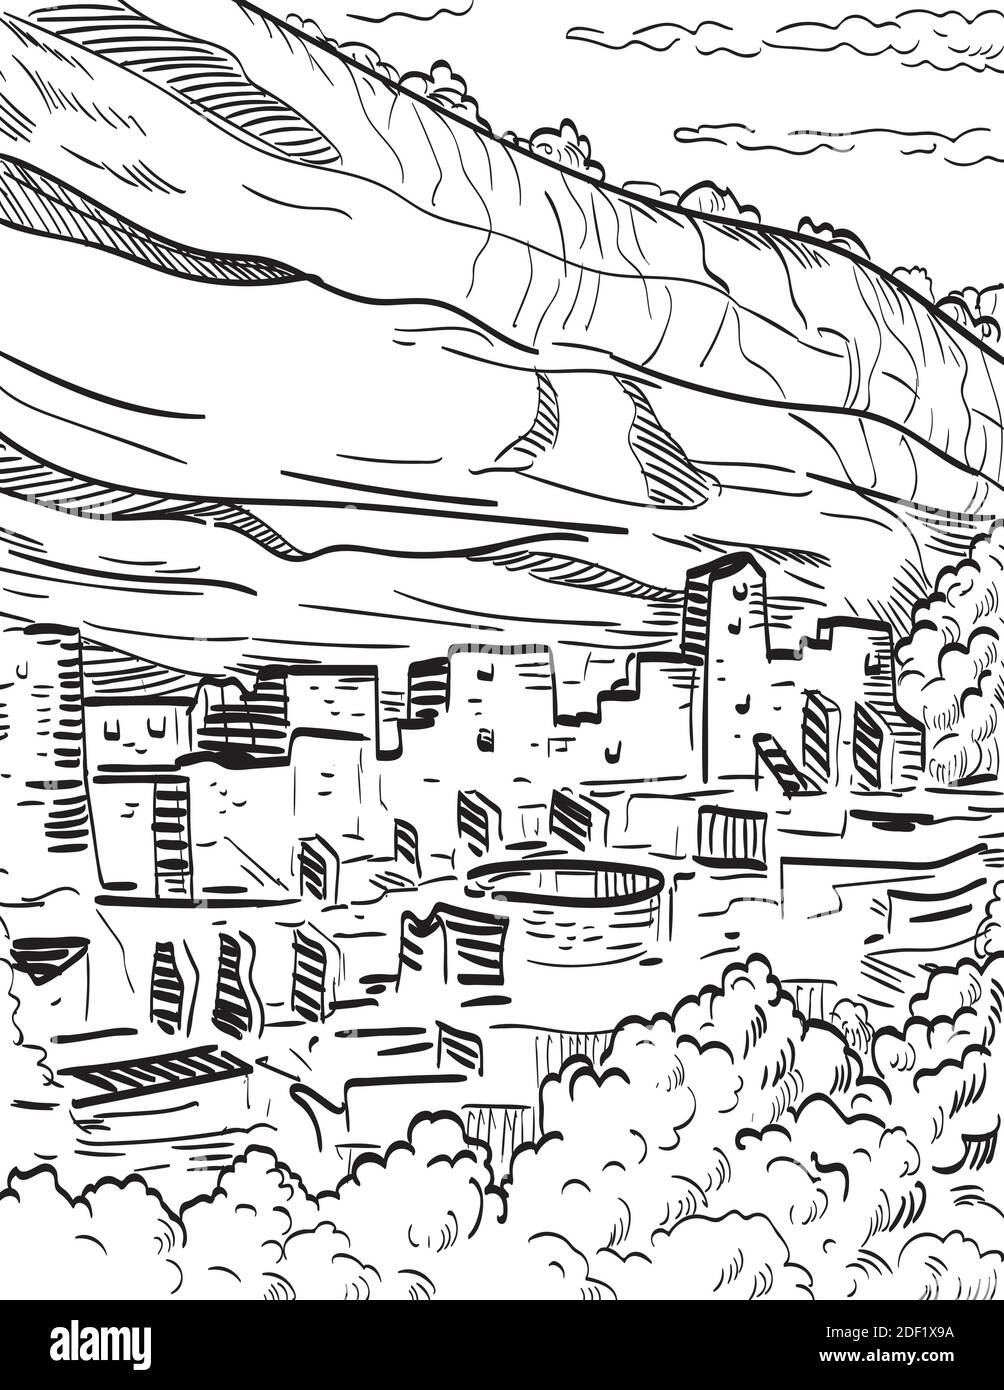 Ilustración de estilo retro en madera del Parque Nacional Mesa Verde en Colorado con las viviendas ancestrales bien conservadas de los acantilados de Puebloan y el enorme Cliff Pal Ilustración del Vector